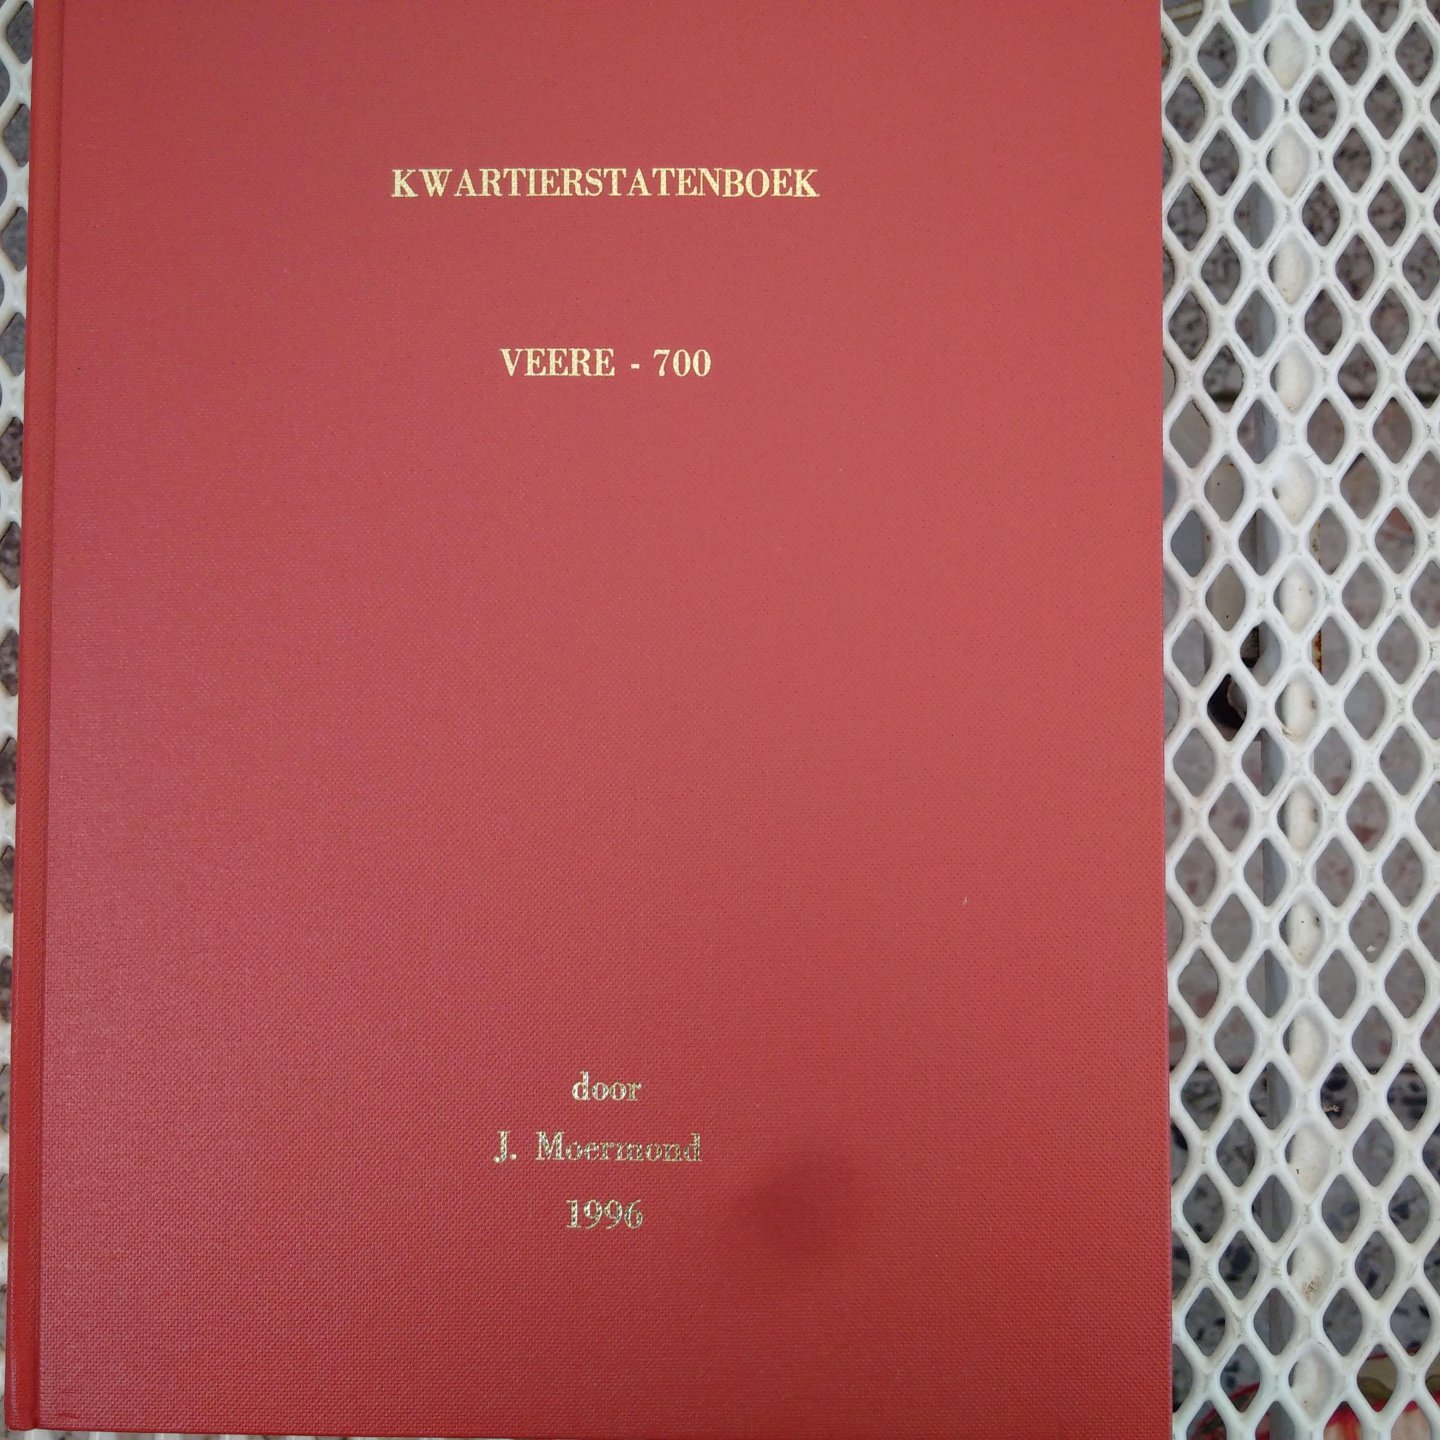 Moermond, J. - Kwartierstatenboek Veere-700